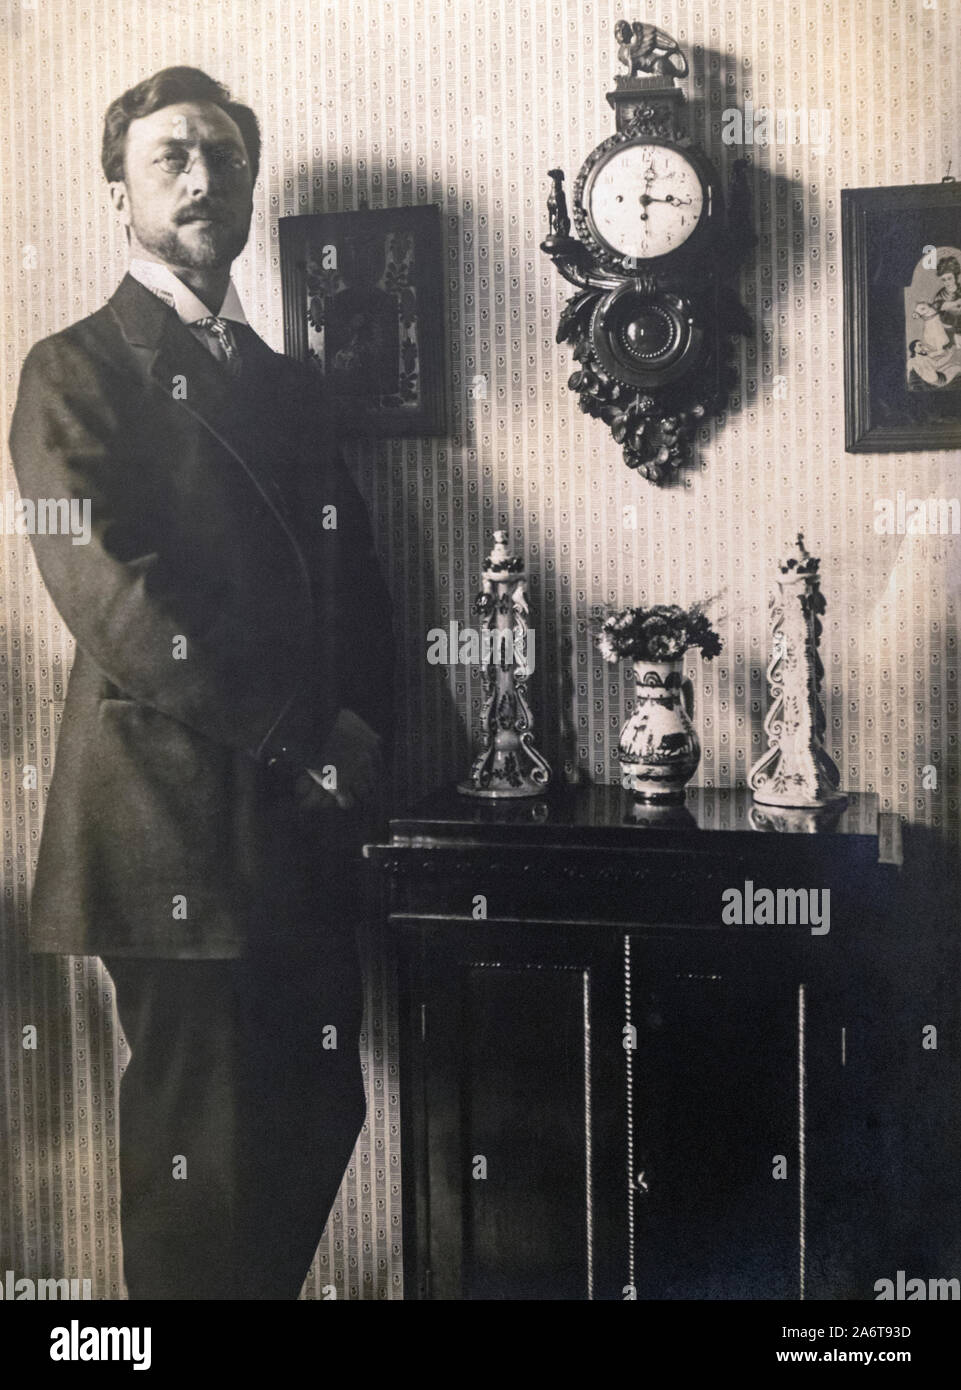 Wassily Kandinsky, 1866 - 1944. Russische Künstler und Kunsttheoretiker. In der Malaga Zweig der Staatliche Russische Museum ausgestellt. Colección del Museo Ru Stockfoto